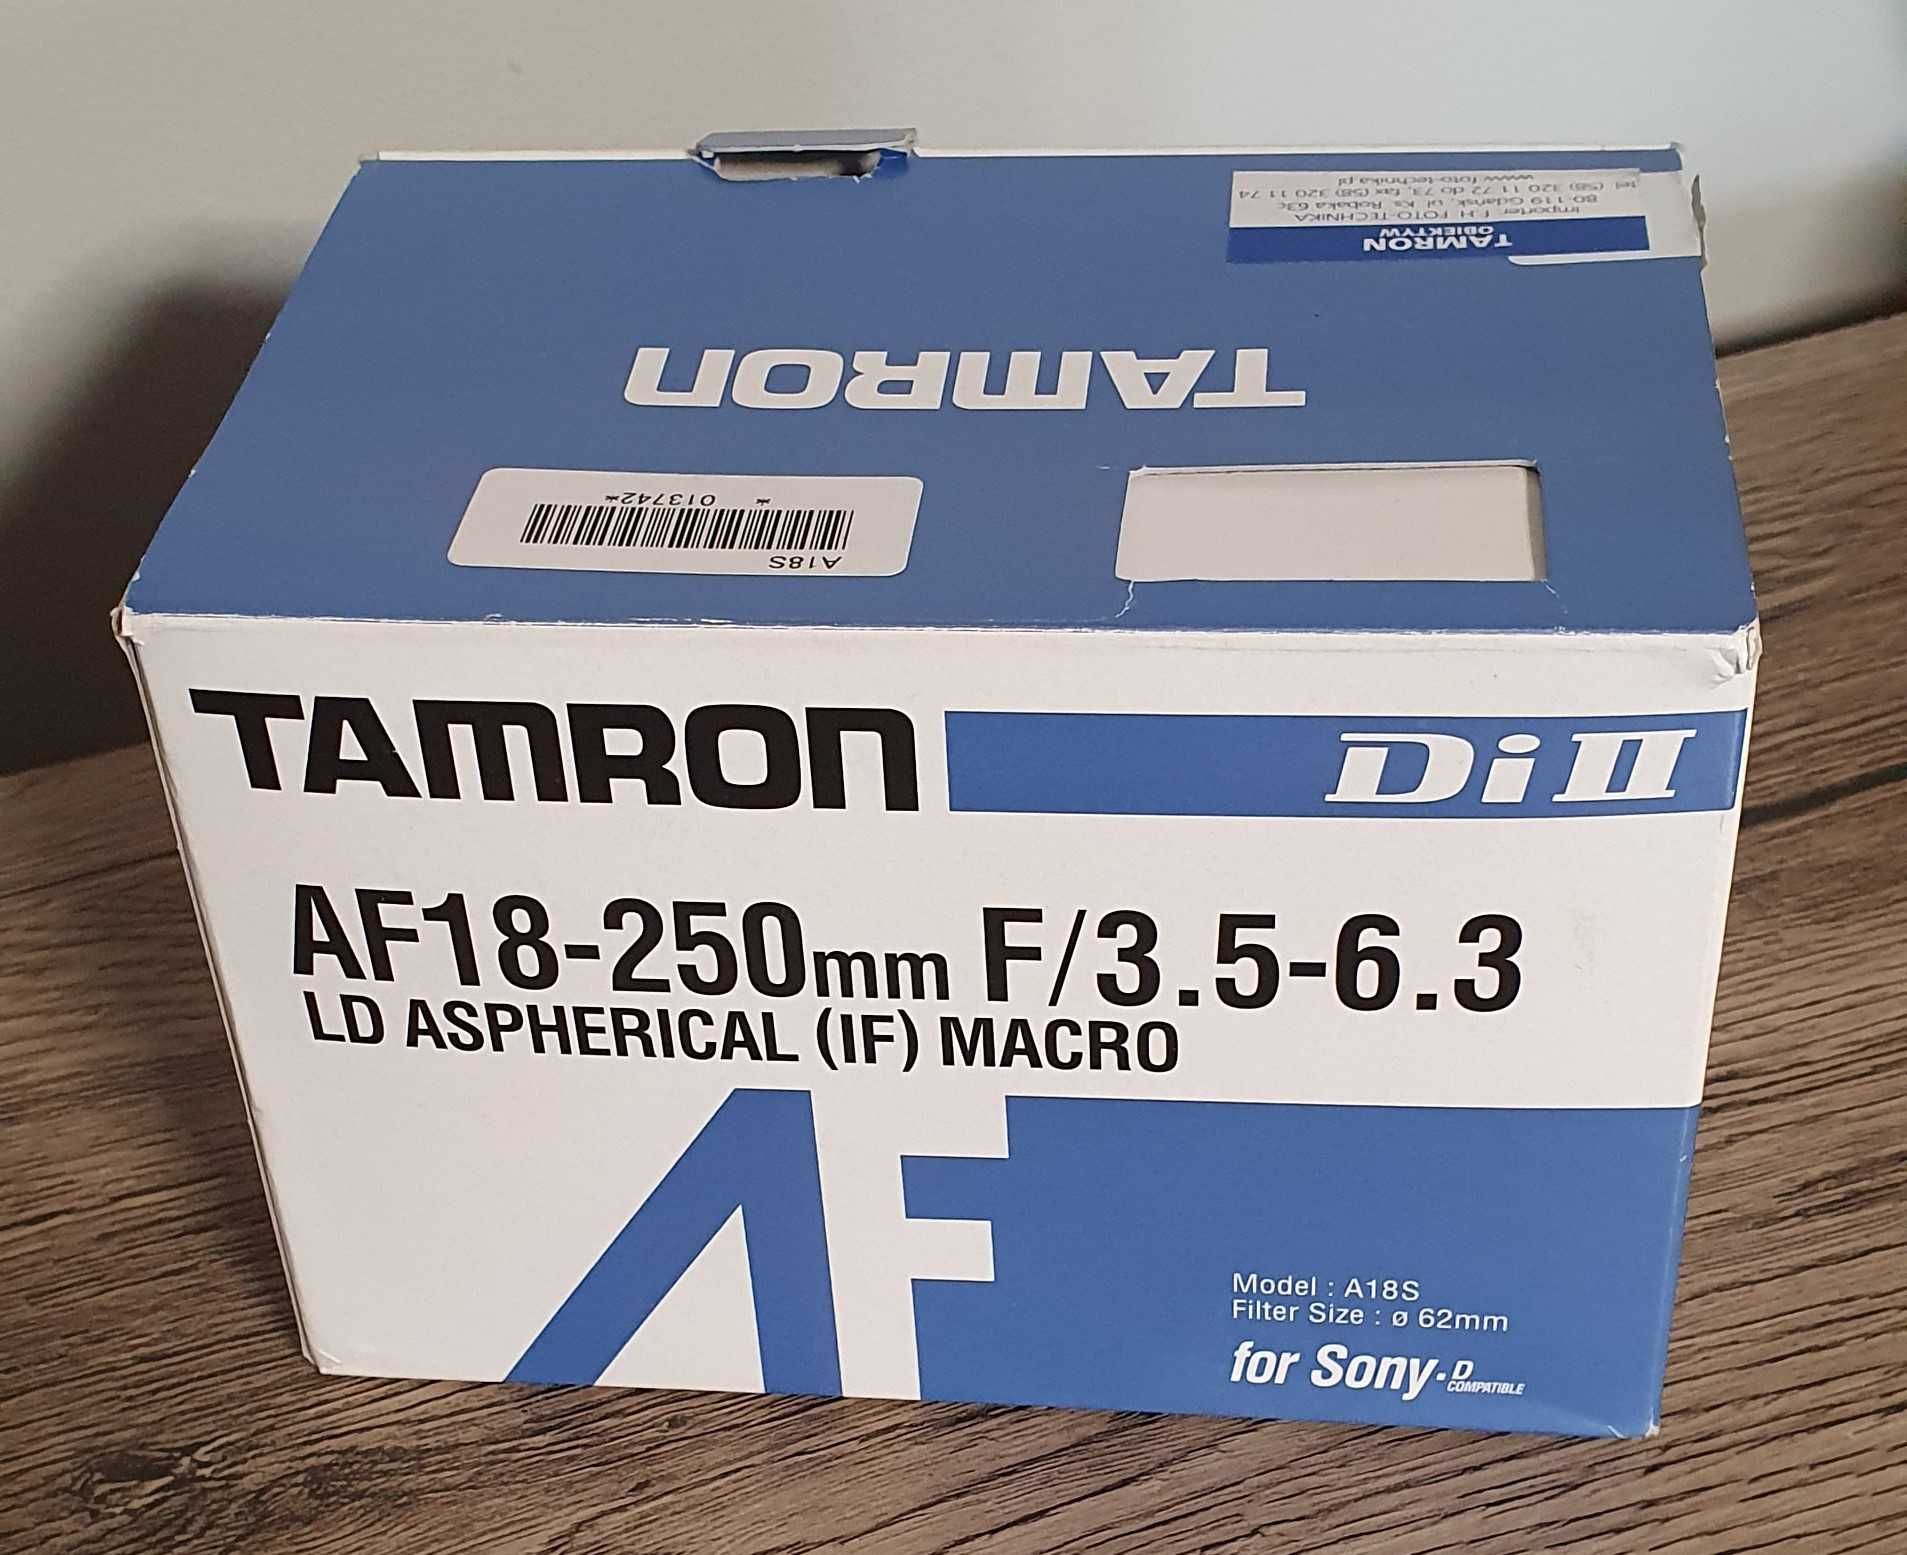 Obiektyw Tamron 18-250 mm f/3.5-6.3 LD Aspherical (IF) Macro / sony